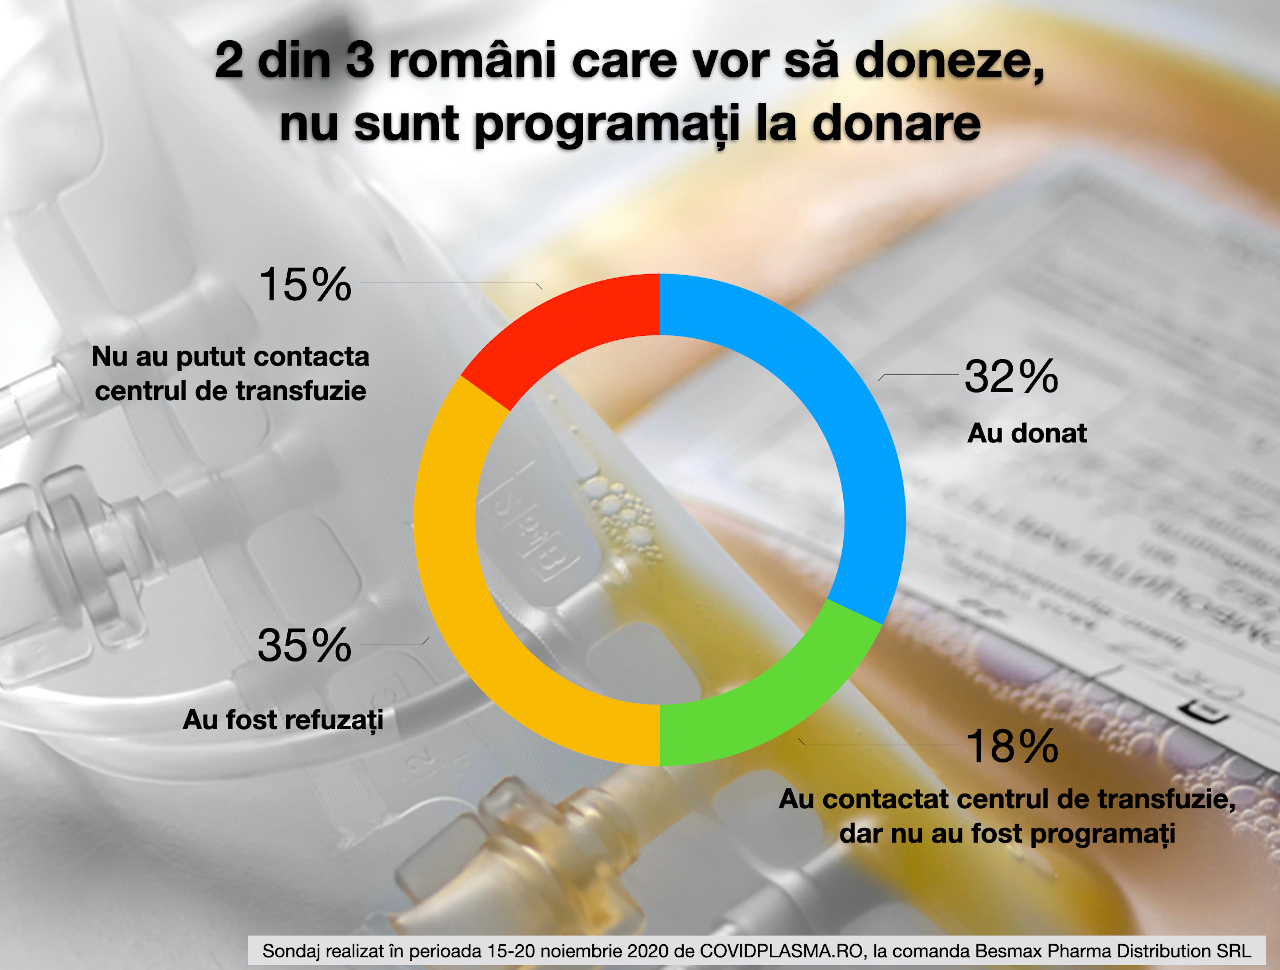 sondaj donare plasma convalescenta Romania